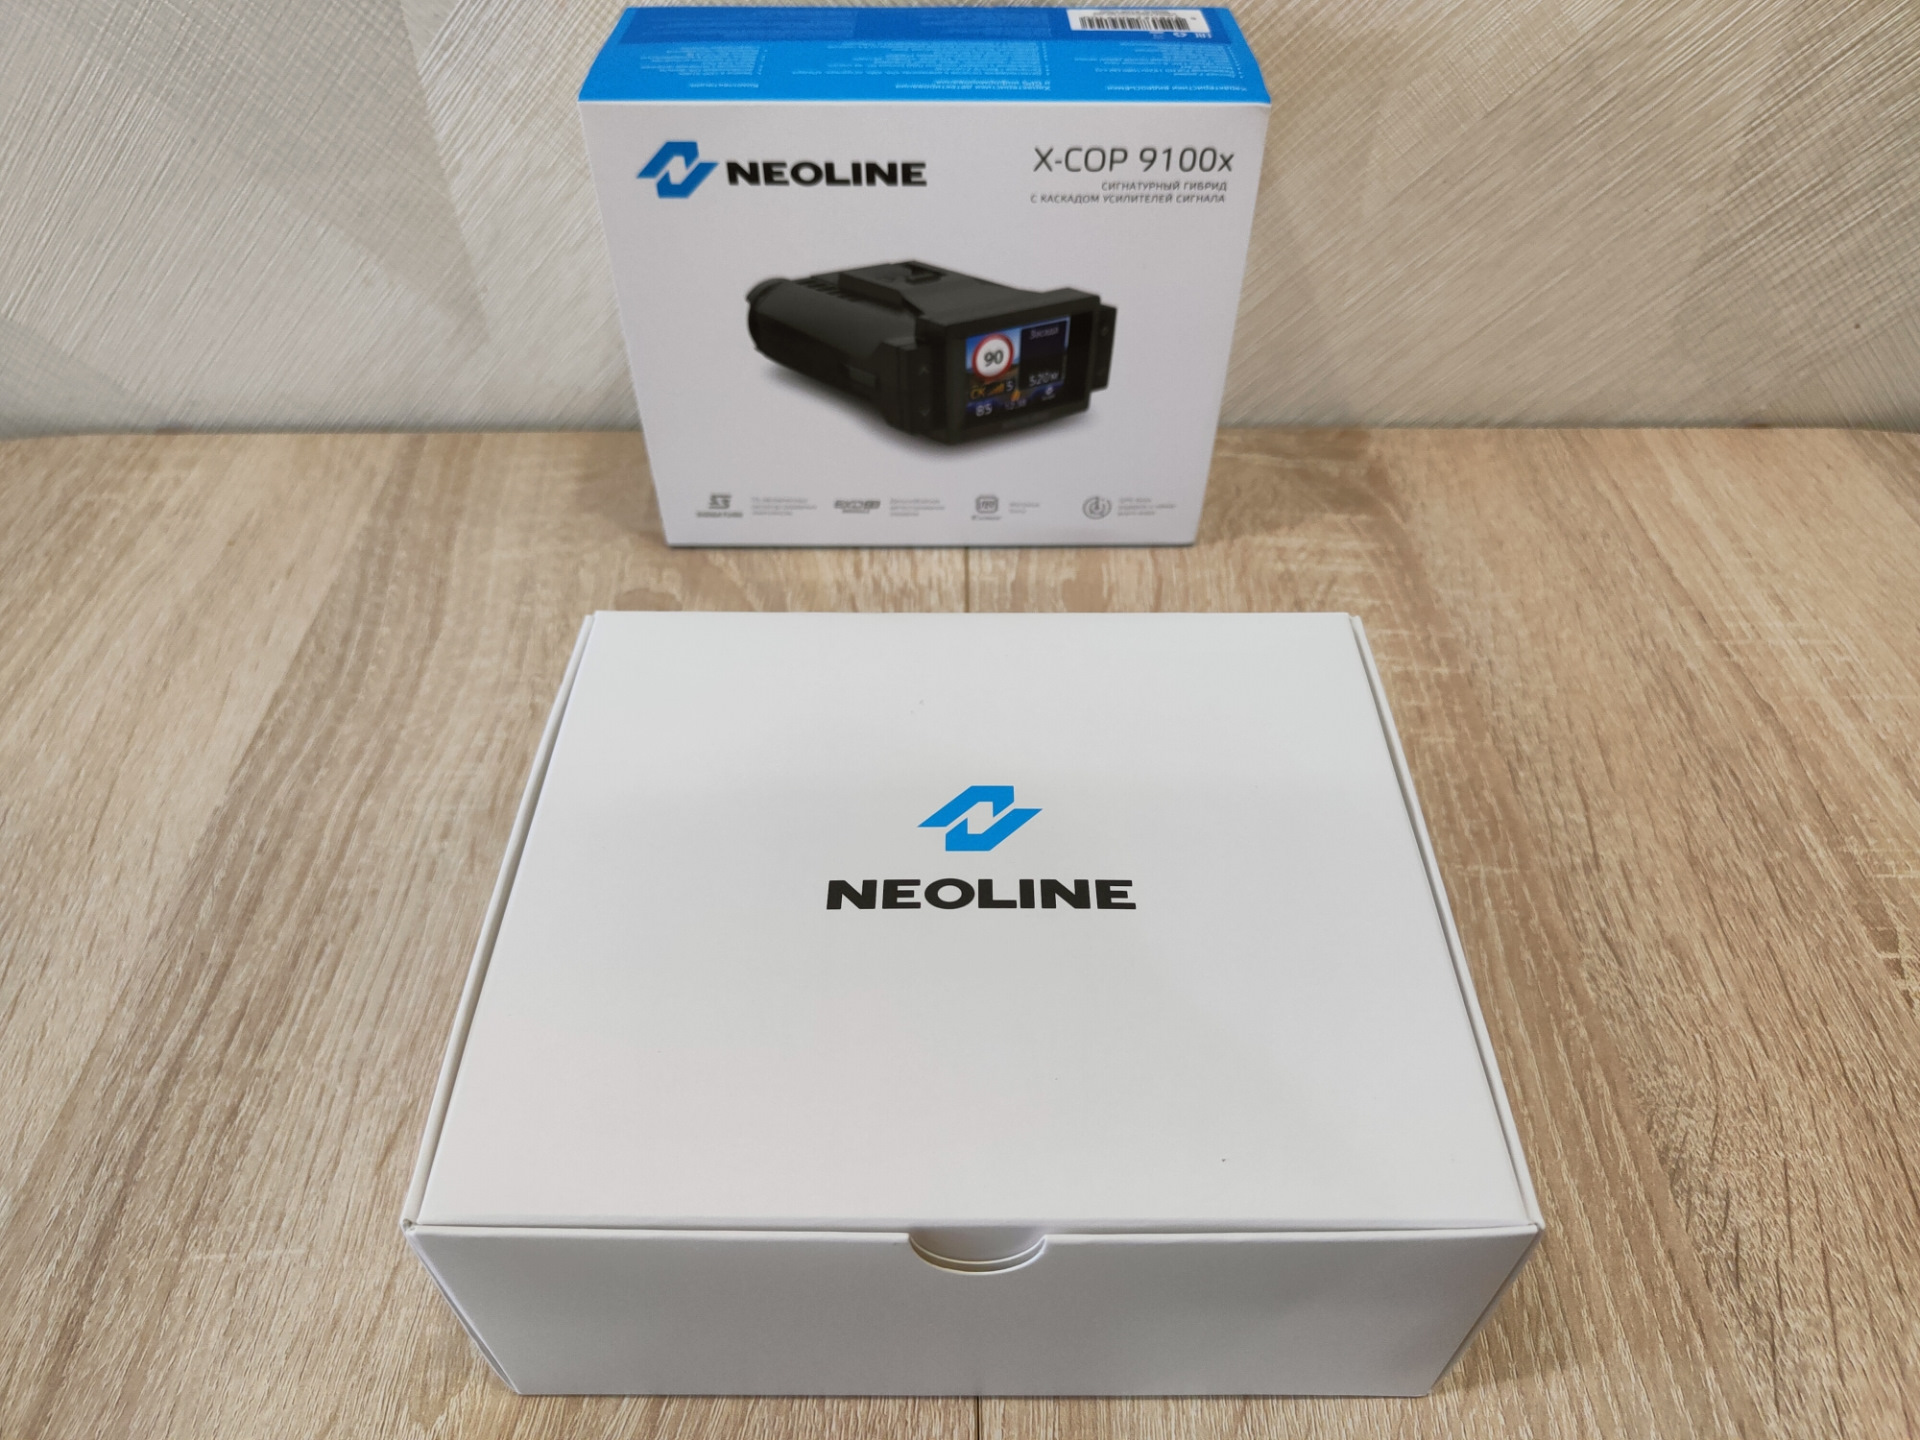 Neoline x cop 9100c. Neoline x-cop 9100x. Neoline x-cop 9100d обзор. Neoline logo. Neoline x9100x каким кабелем подключить.